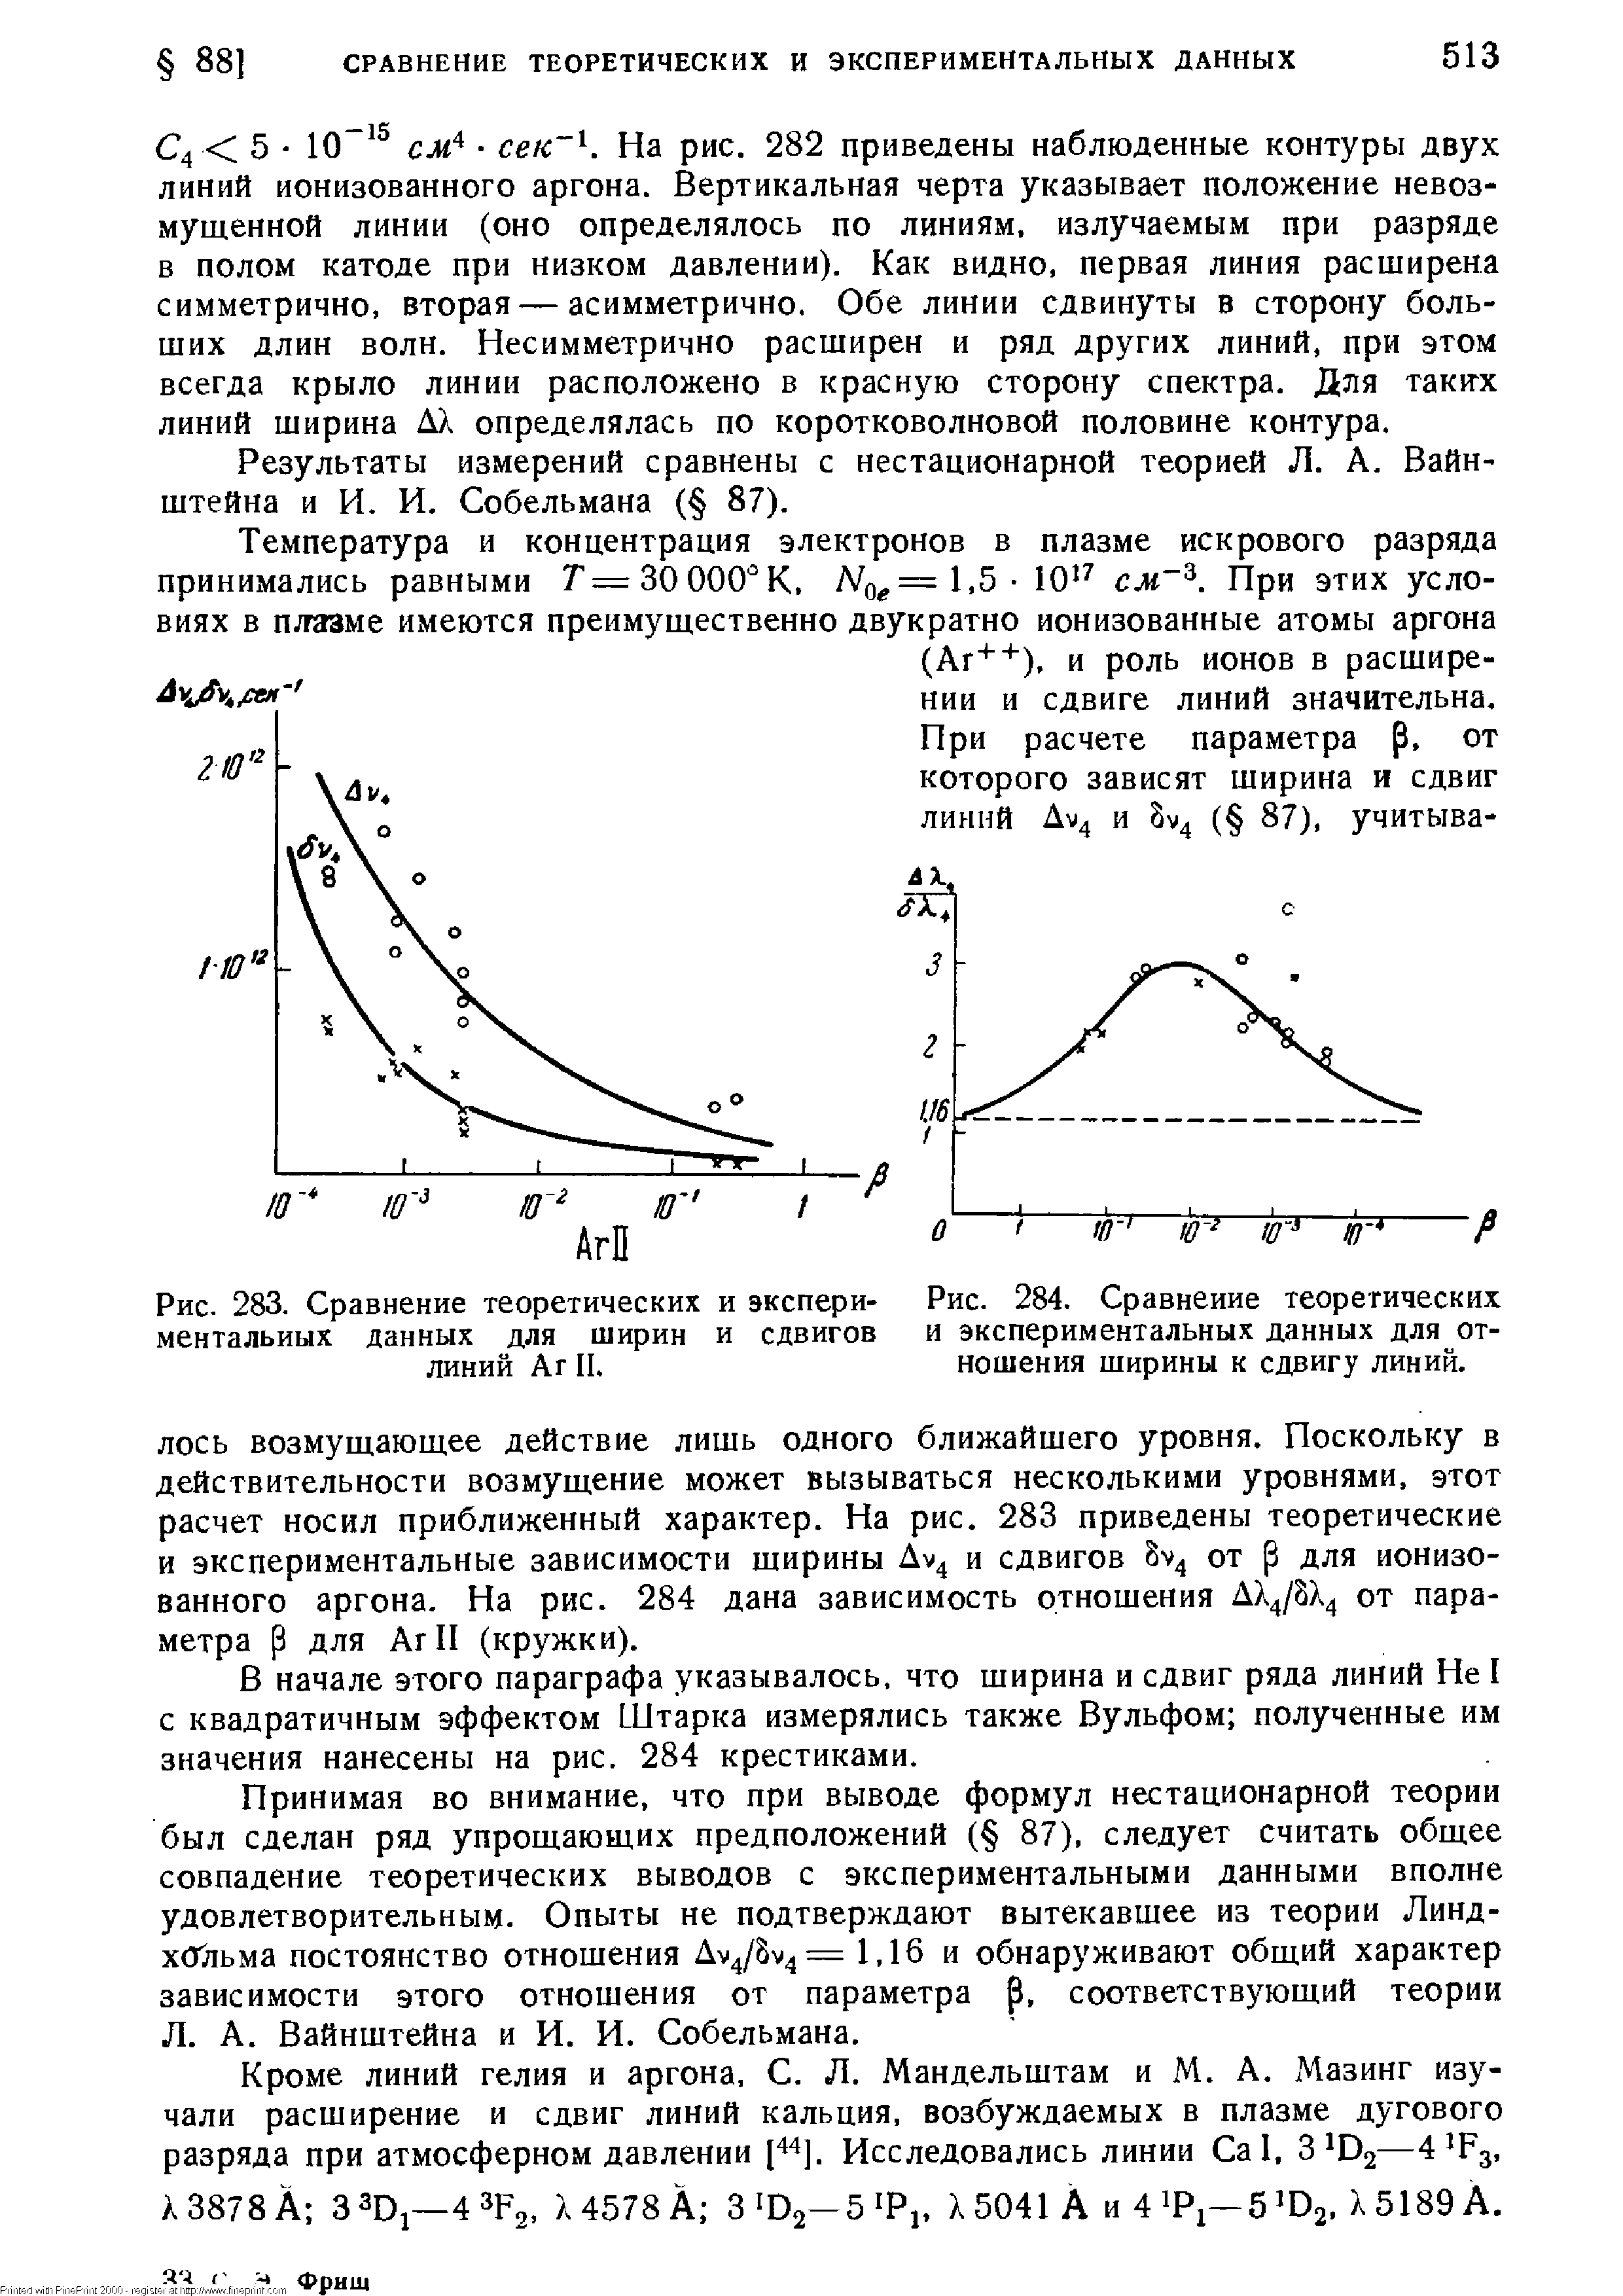 Рис. 283. Сравнение теоретических и экспериментальных данных для ширин и сдвигов линий Аг II.
